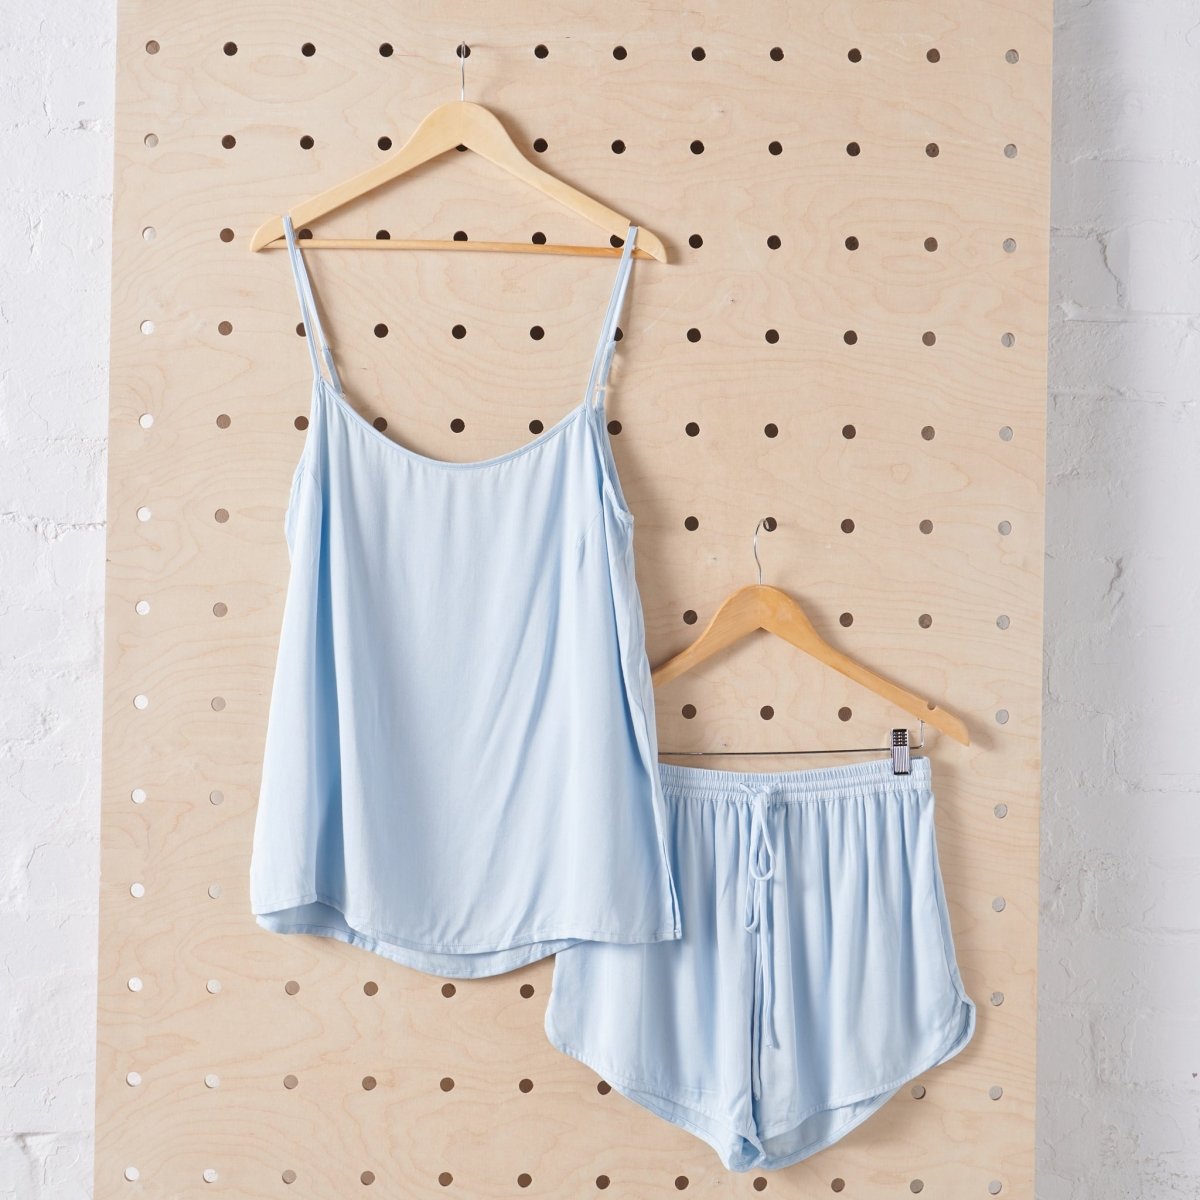 Bamboo Pyjama Set - Cami and Shorts in Baby Blue-Jade and May-Pyjamas-Jade and May